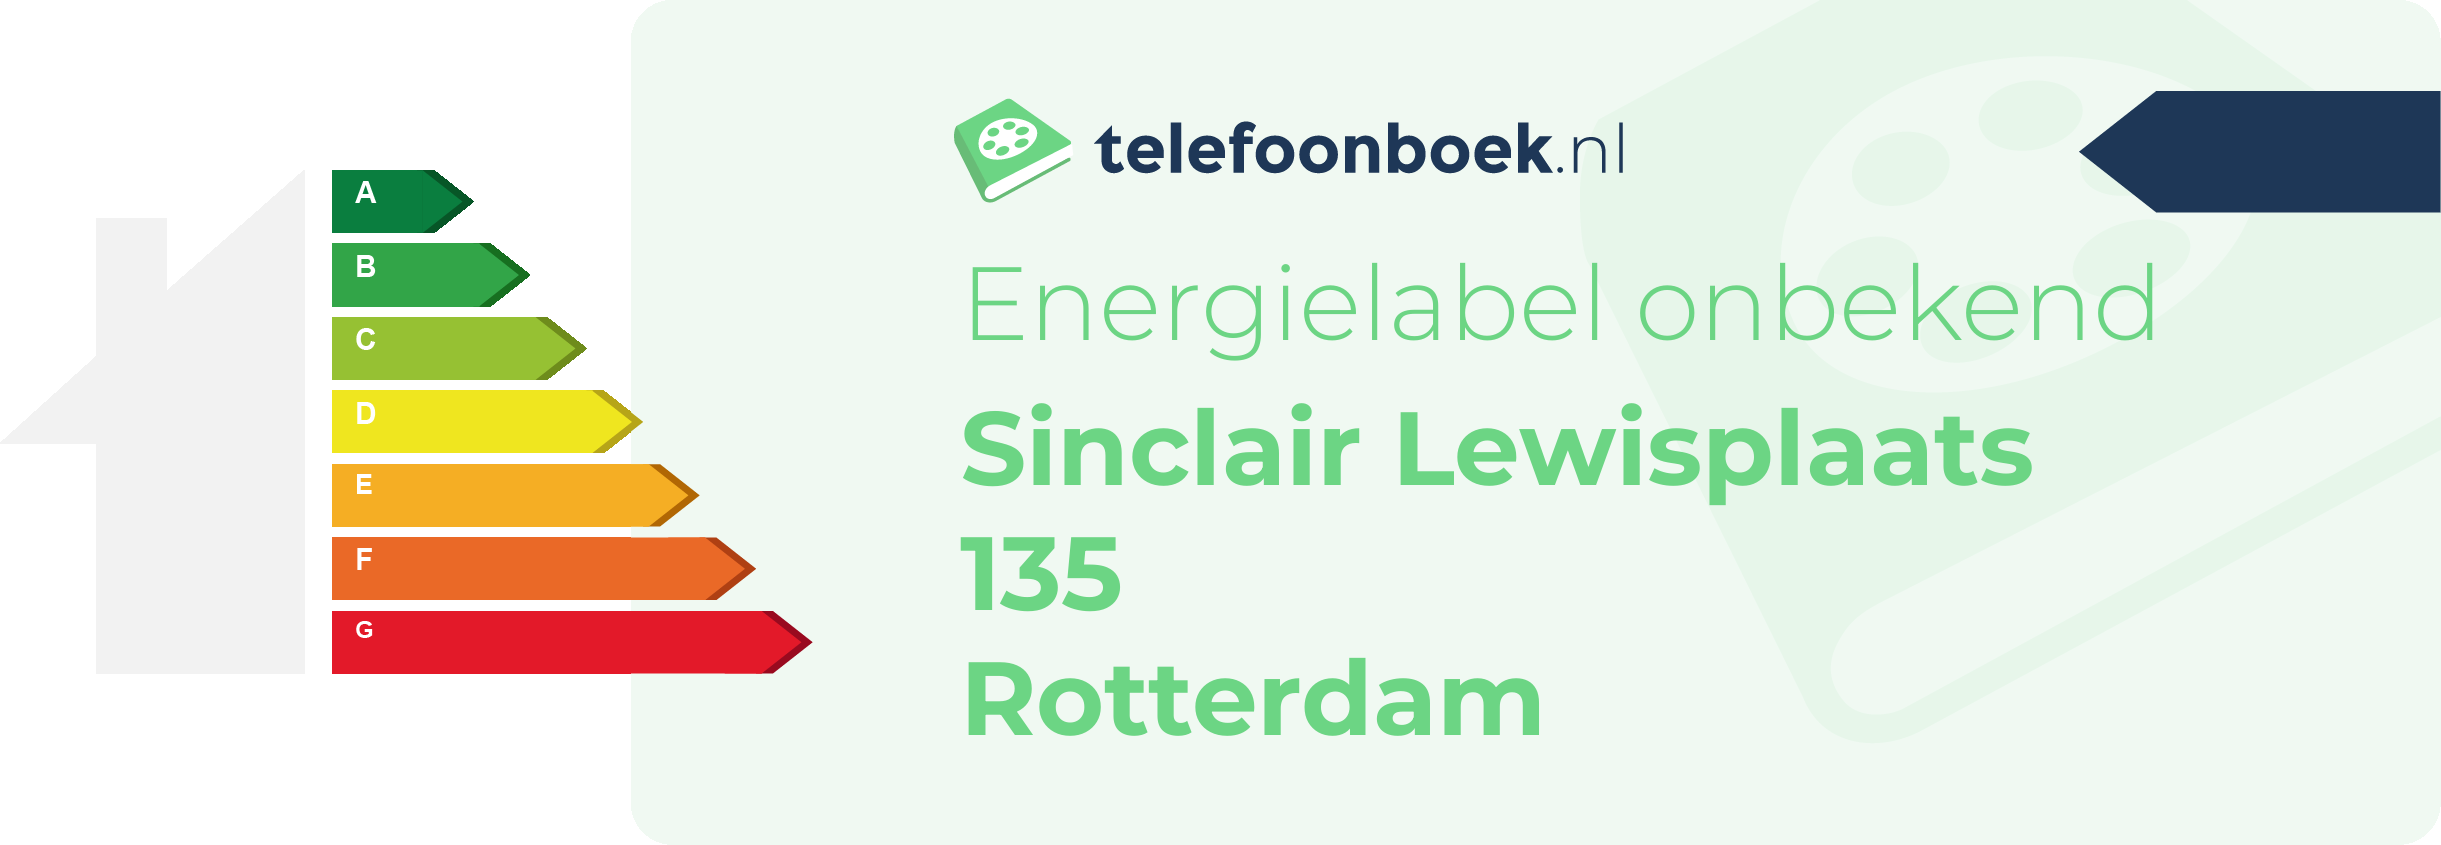 Energielabel Sinclair Lewisplaats 135 Rotterdam